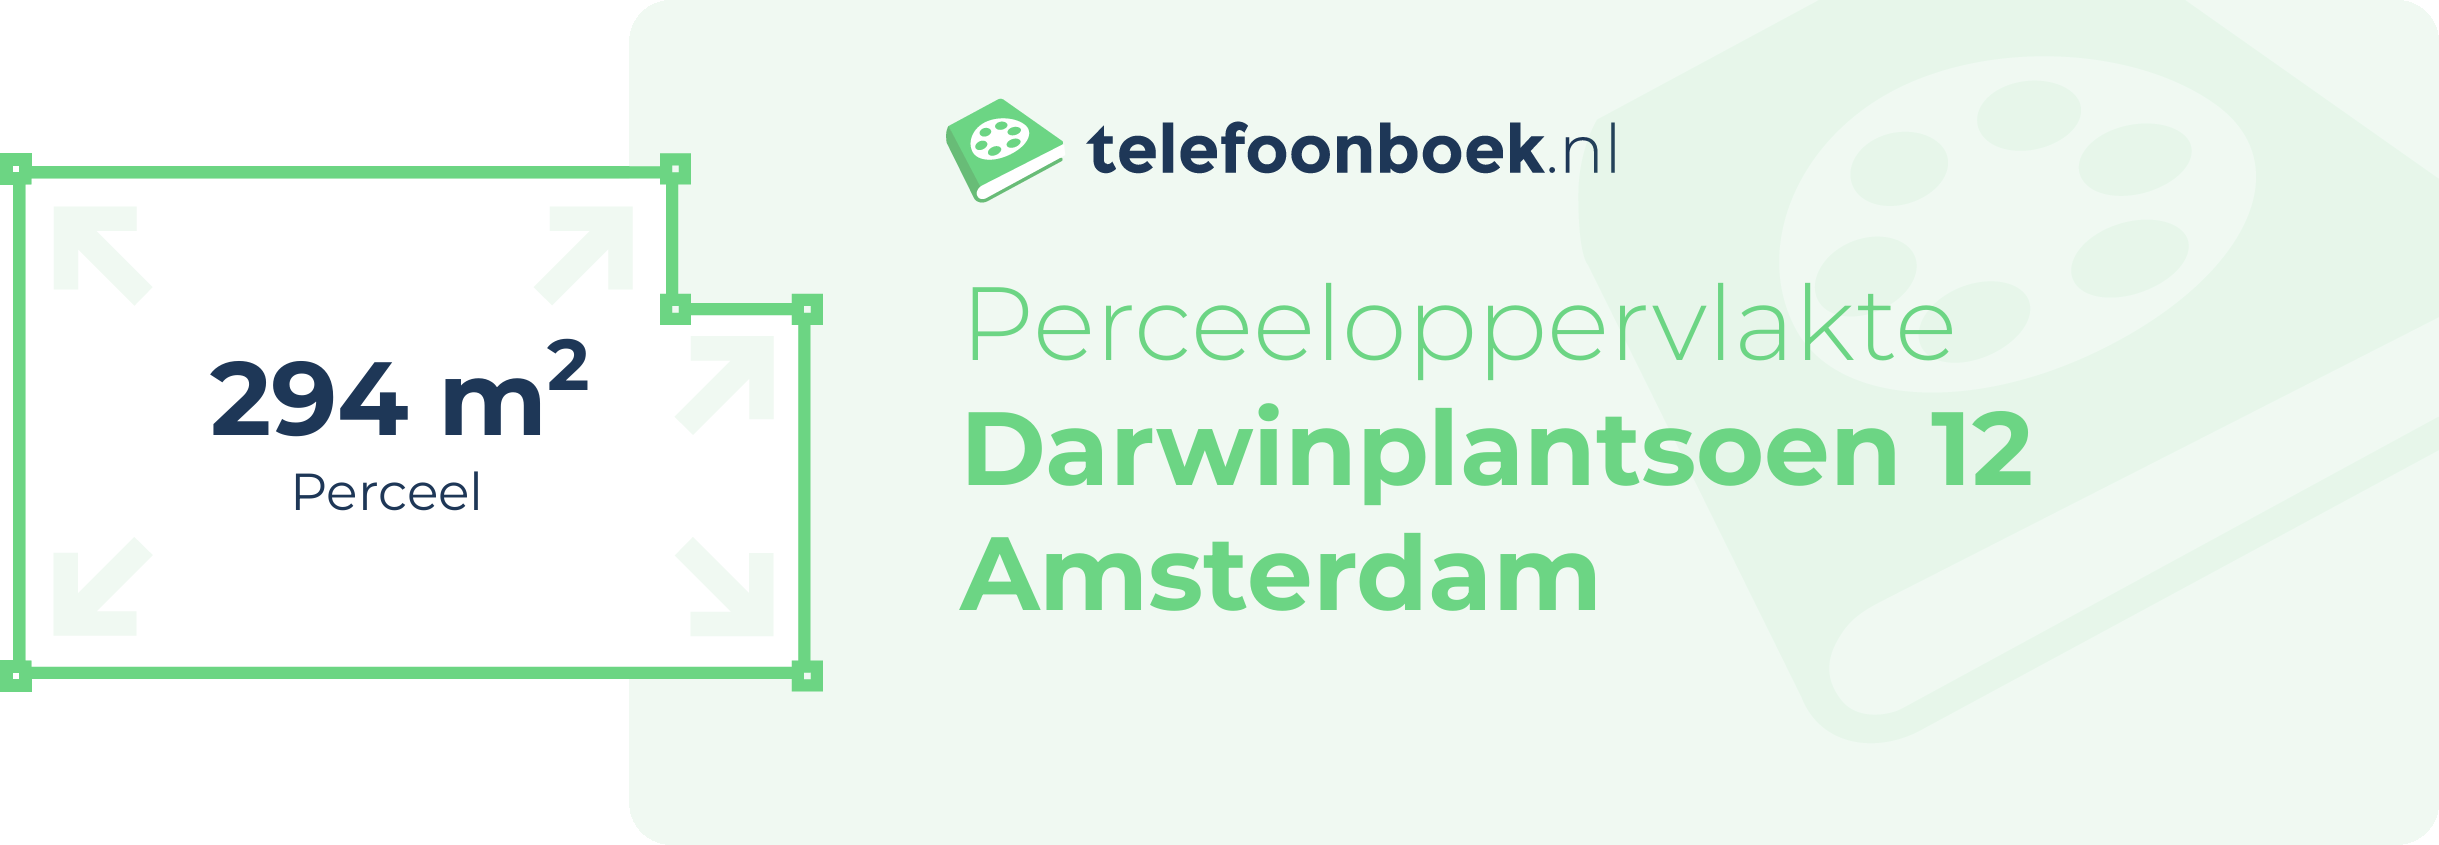 Perceeloppervlakte Darwinplantsoen 12 Amsterdam